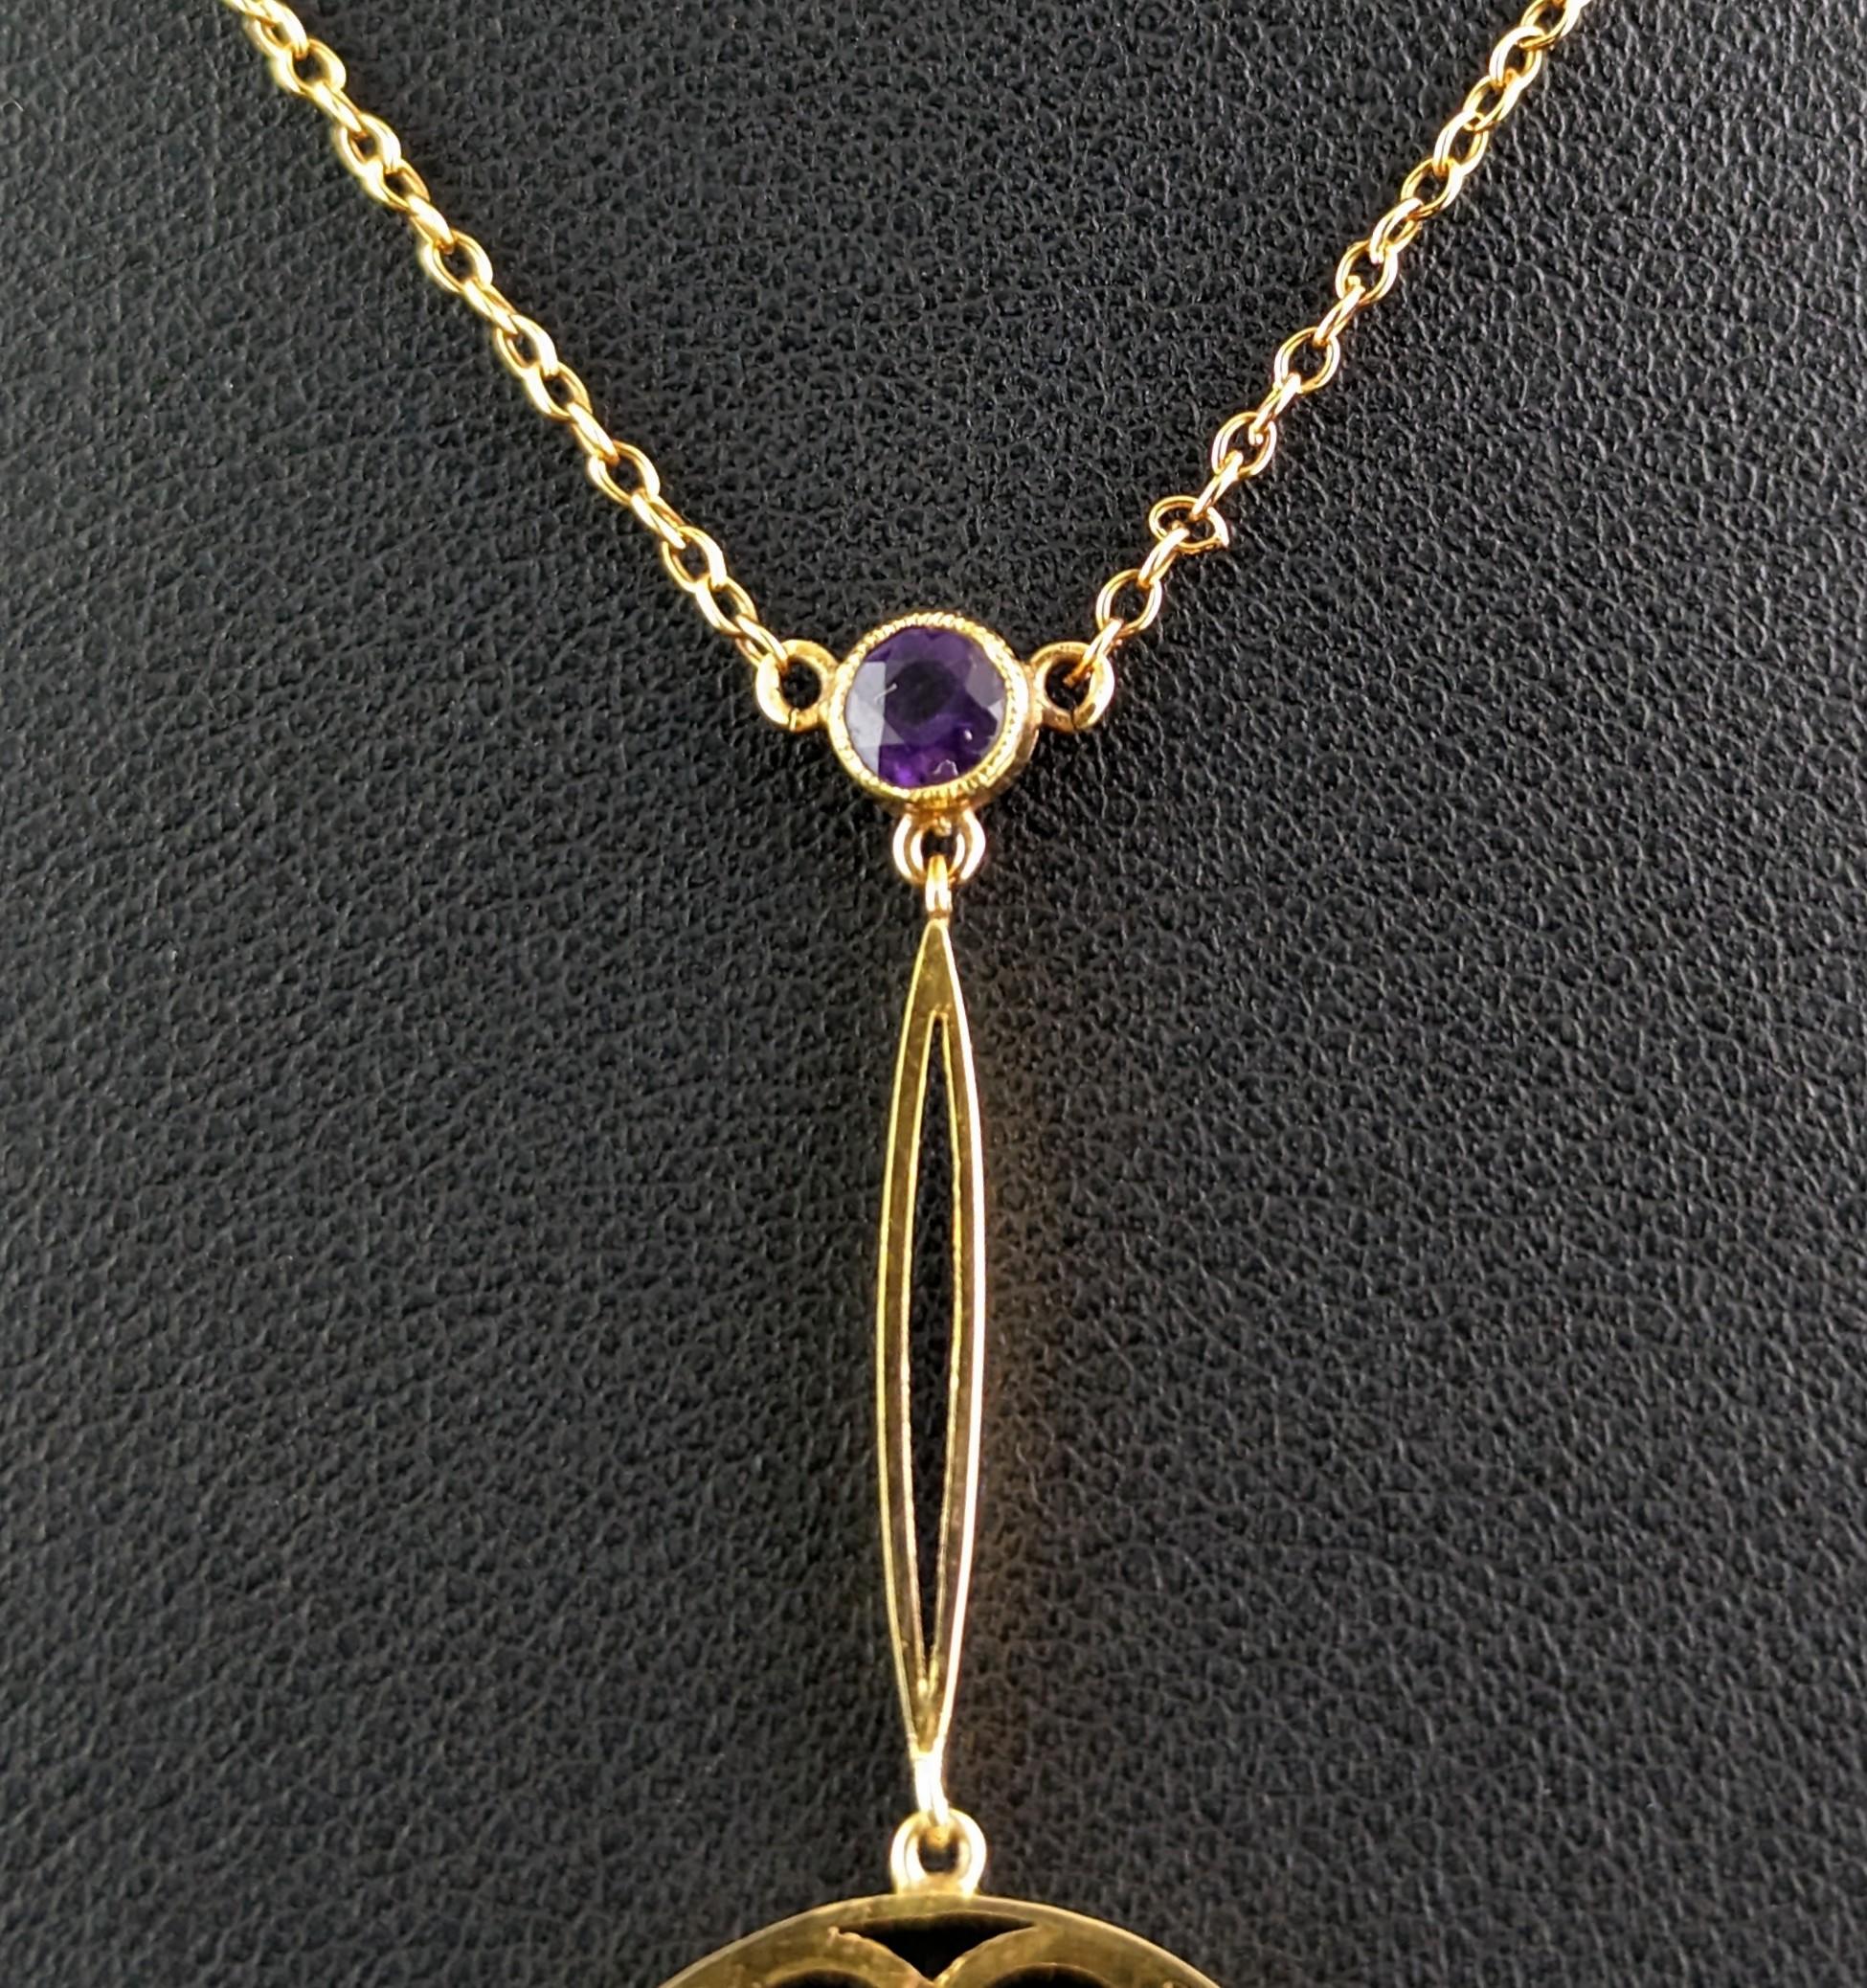 Antique Art Nouveau Pendant Necklace, Amethyst and Pearl, 9 Karat Gold  For Sale 3